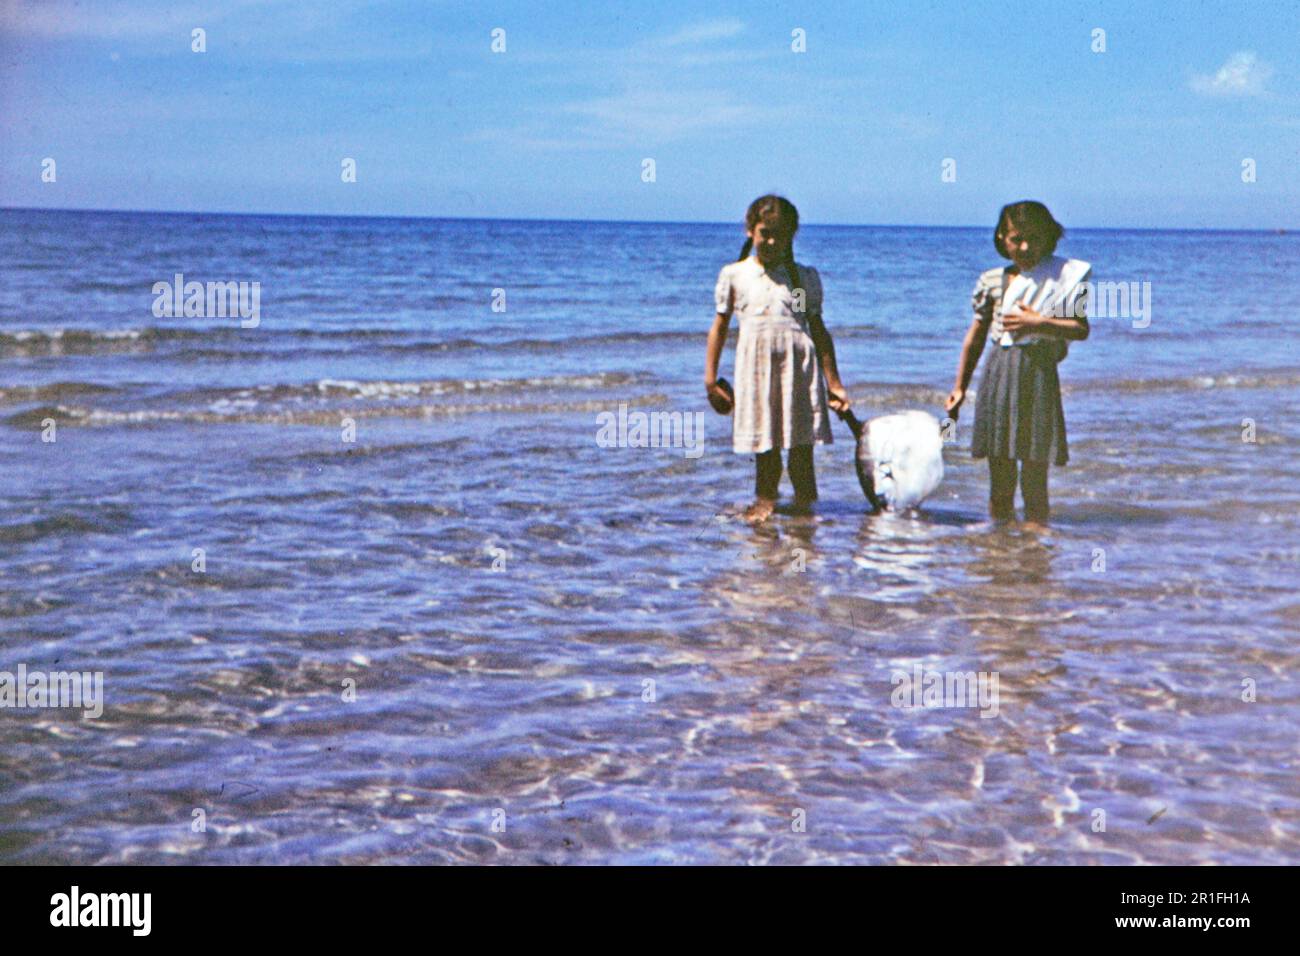 Zwei junge Mädchen standen im Wasser und hielten einen Mondfisch (oder Opah-Fisch), der zur Herstellung von Seife verwendet wurde. 1950-1955 Stockfoto